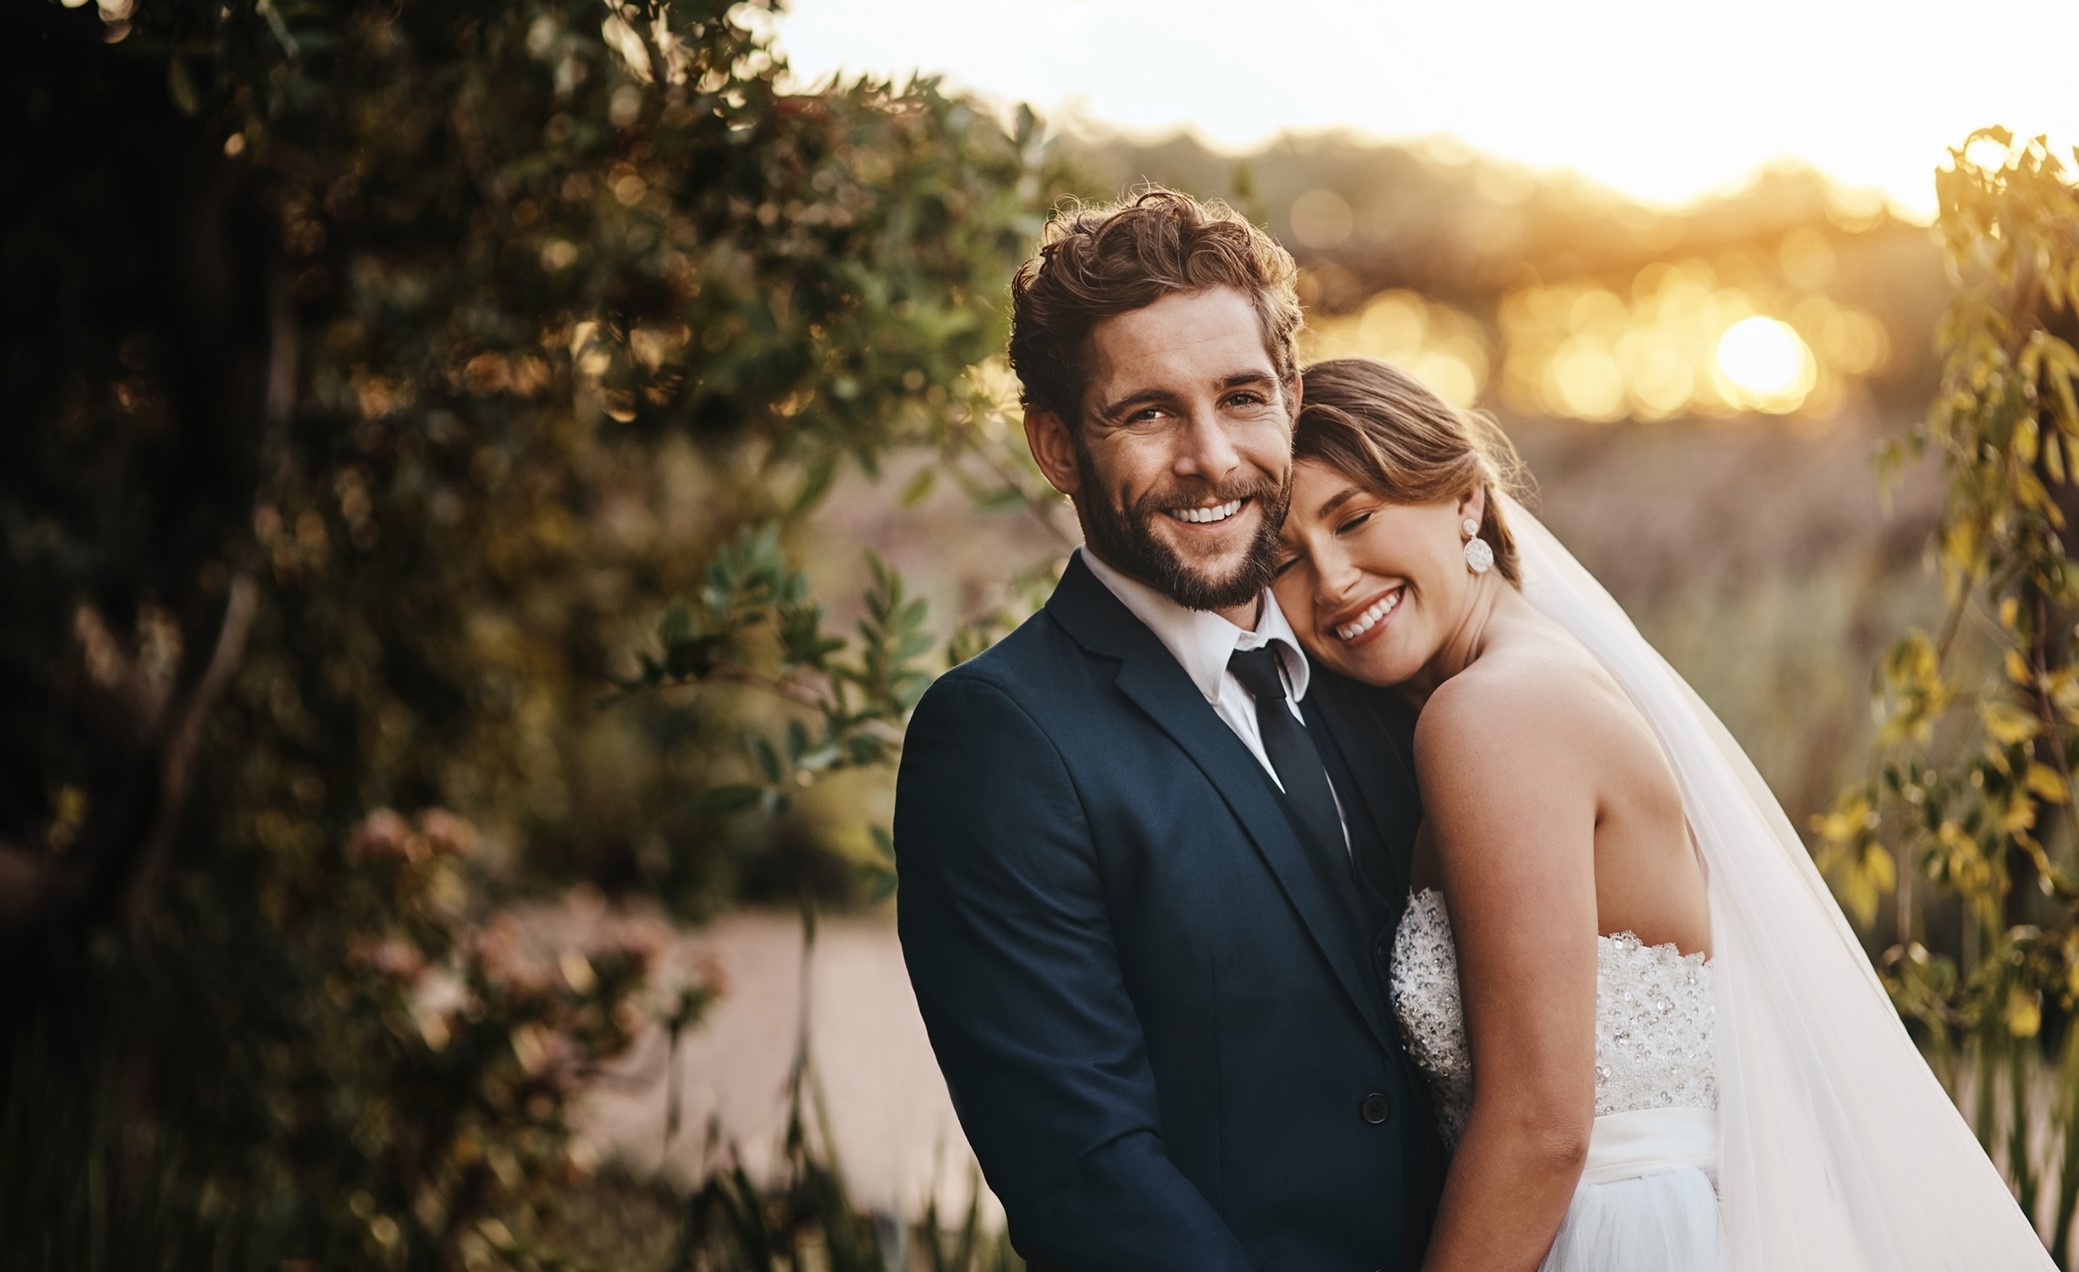 A boldog, hosszú házasság 5 titka